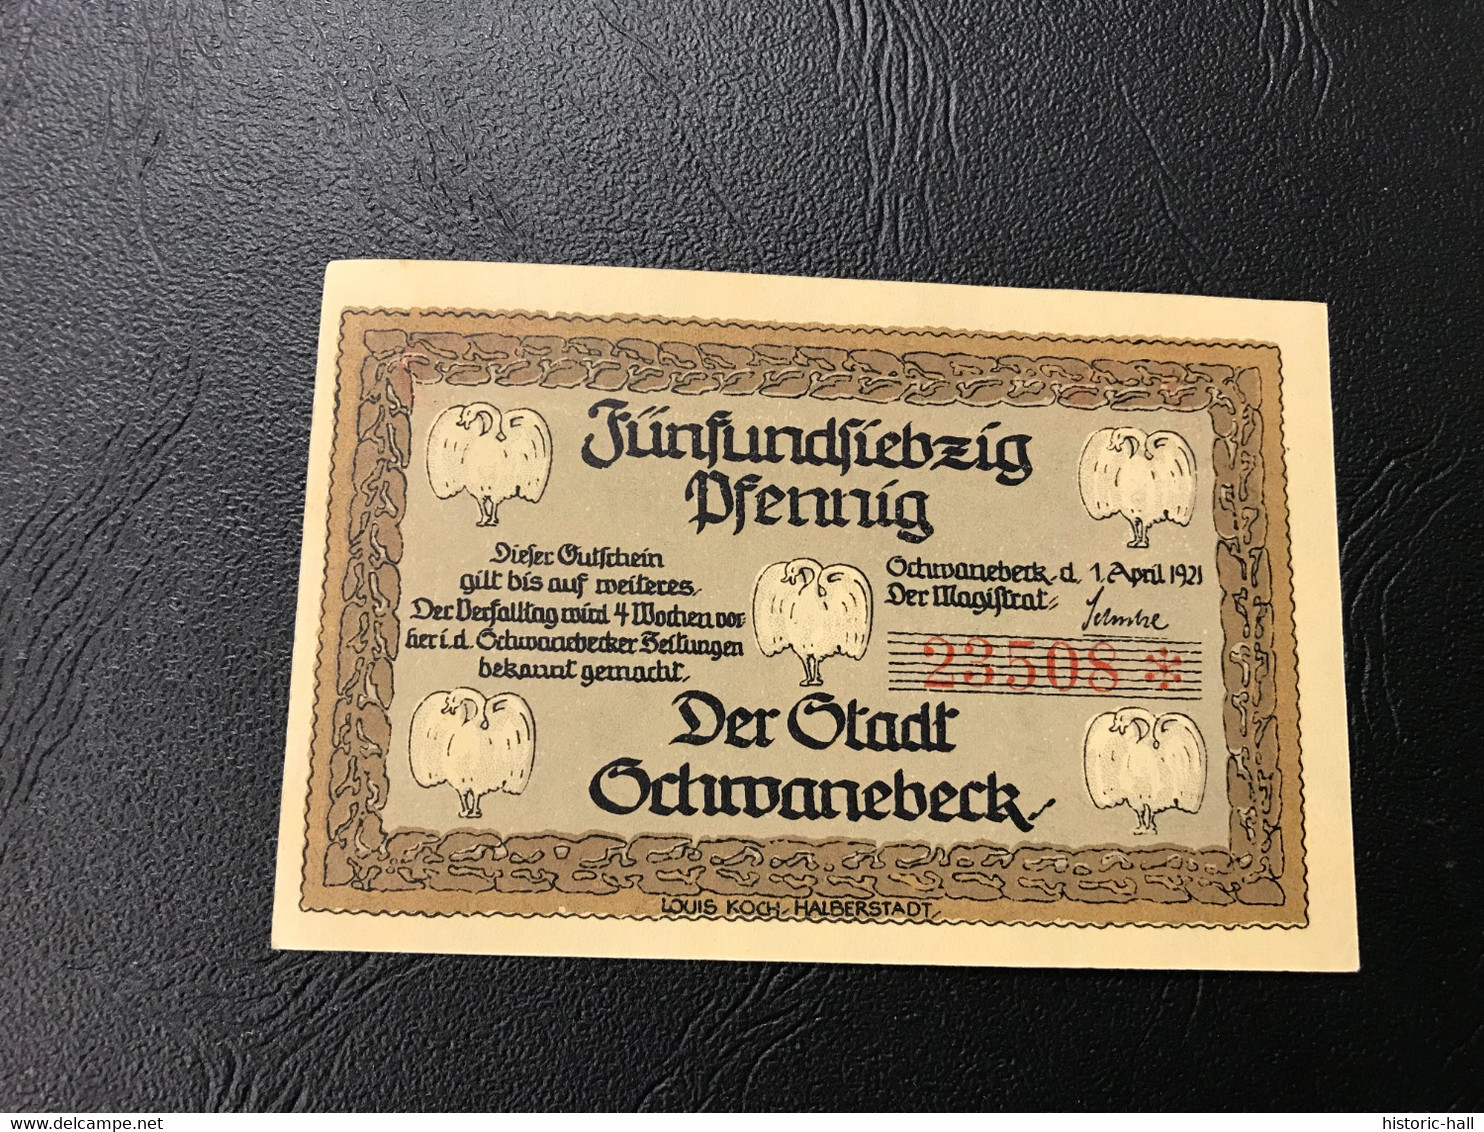 Notgeld - Billet Necéssité Allemagne - 75 Pfennig - Schwanebeck - 1 Avril 1921 - Ohne Zuordnung